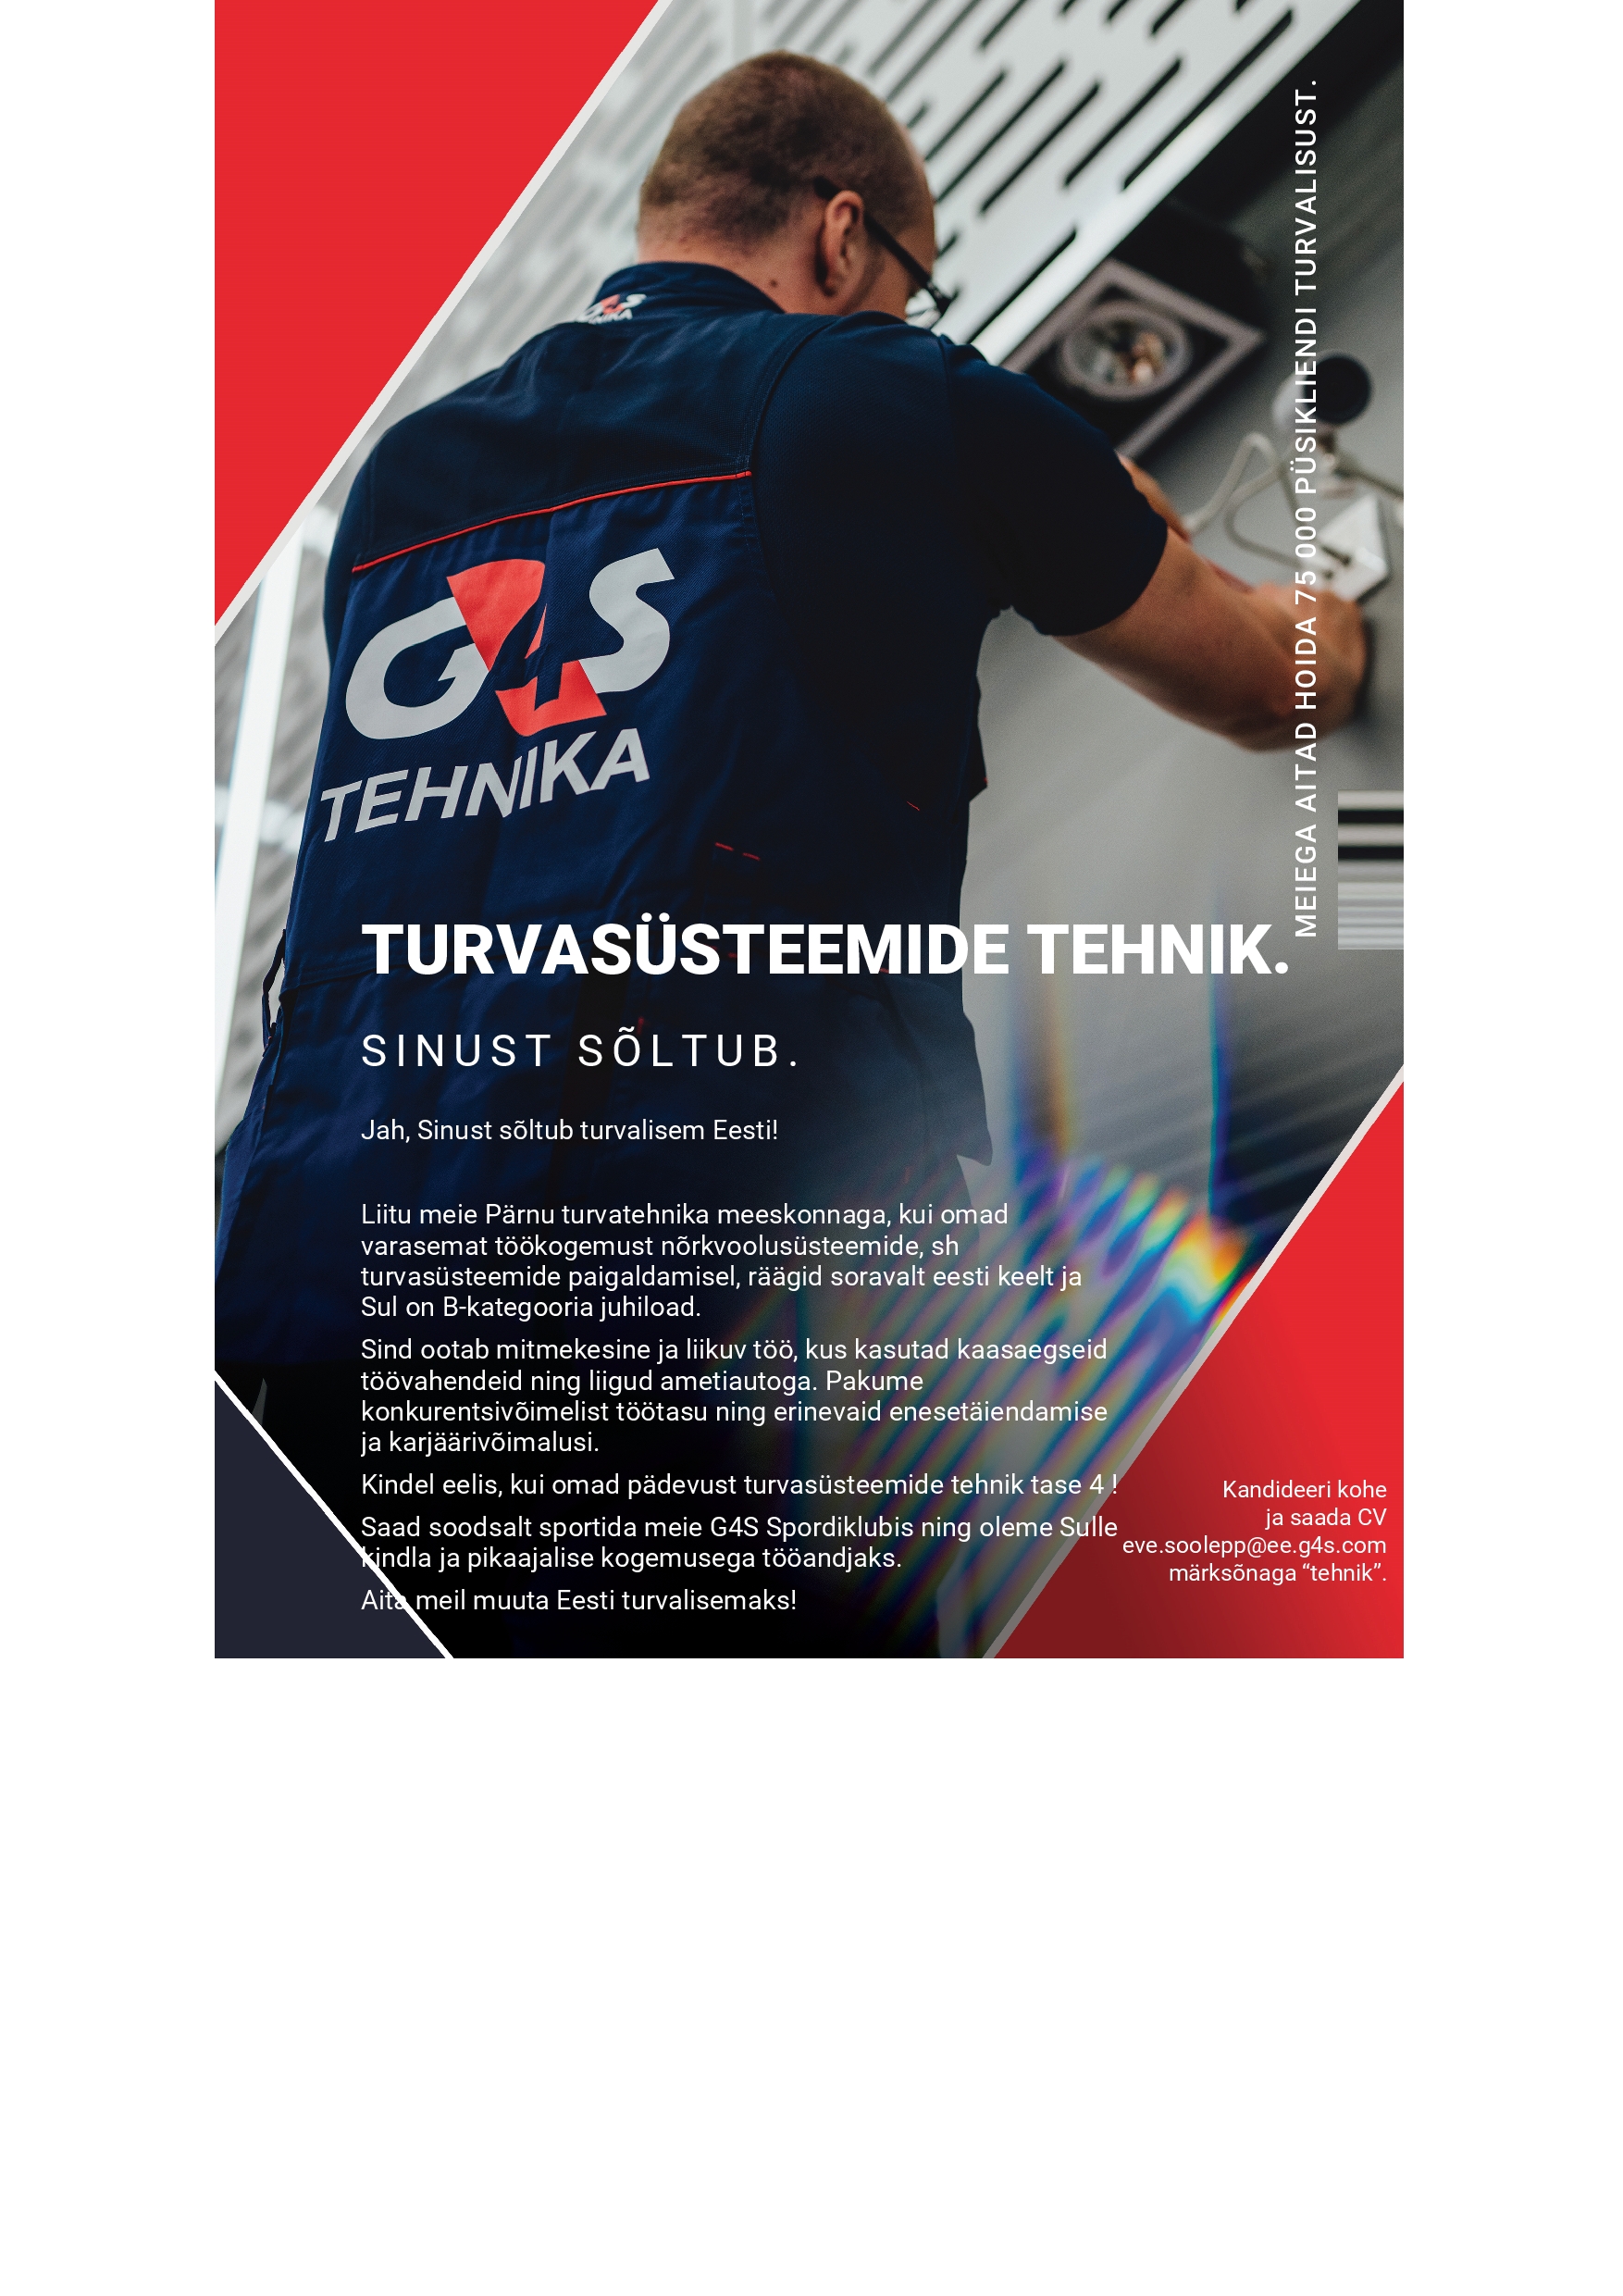 AS G4S Eesti Turvasüsteemide tehnik (Pärnu)